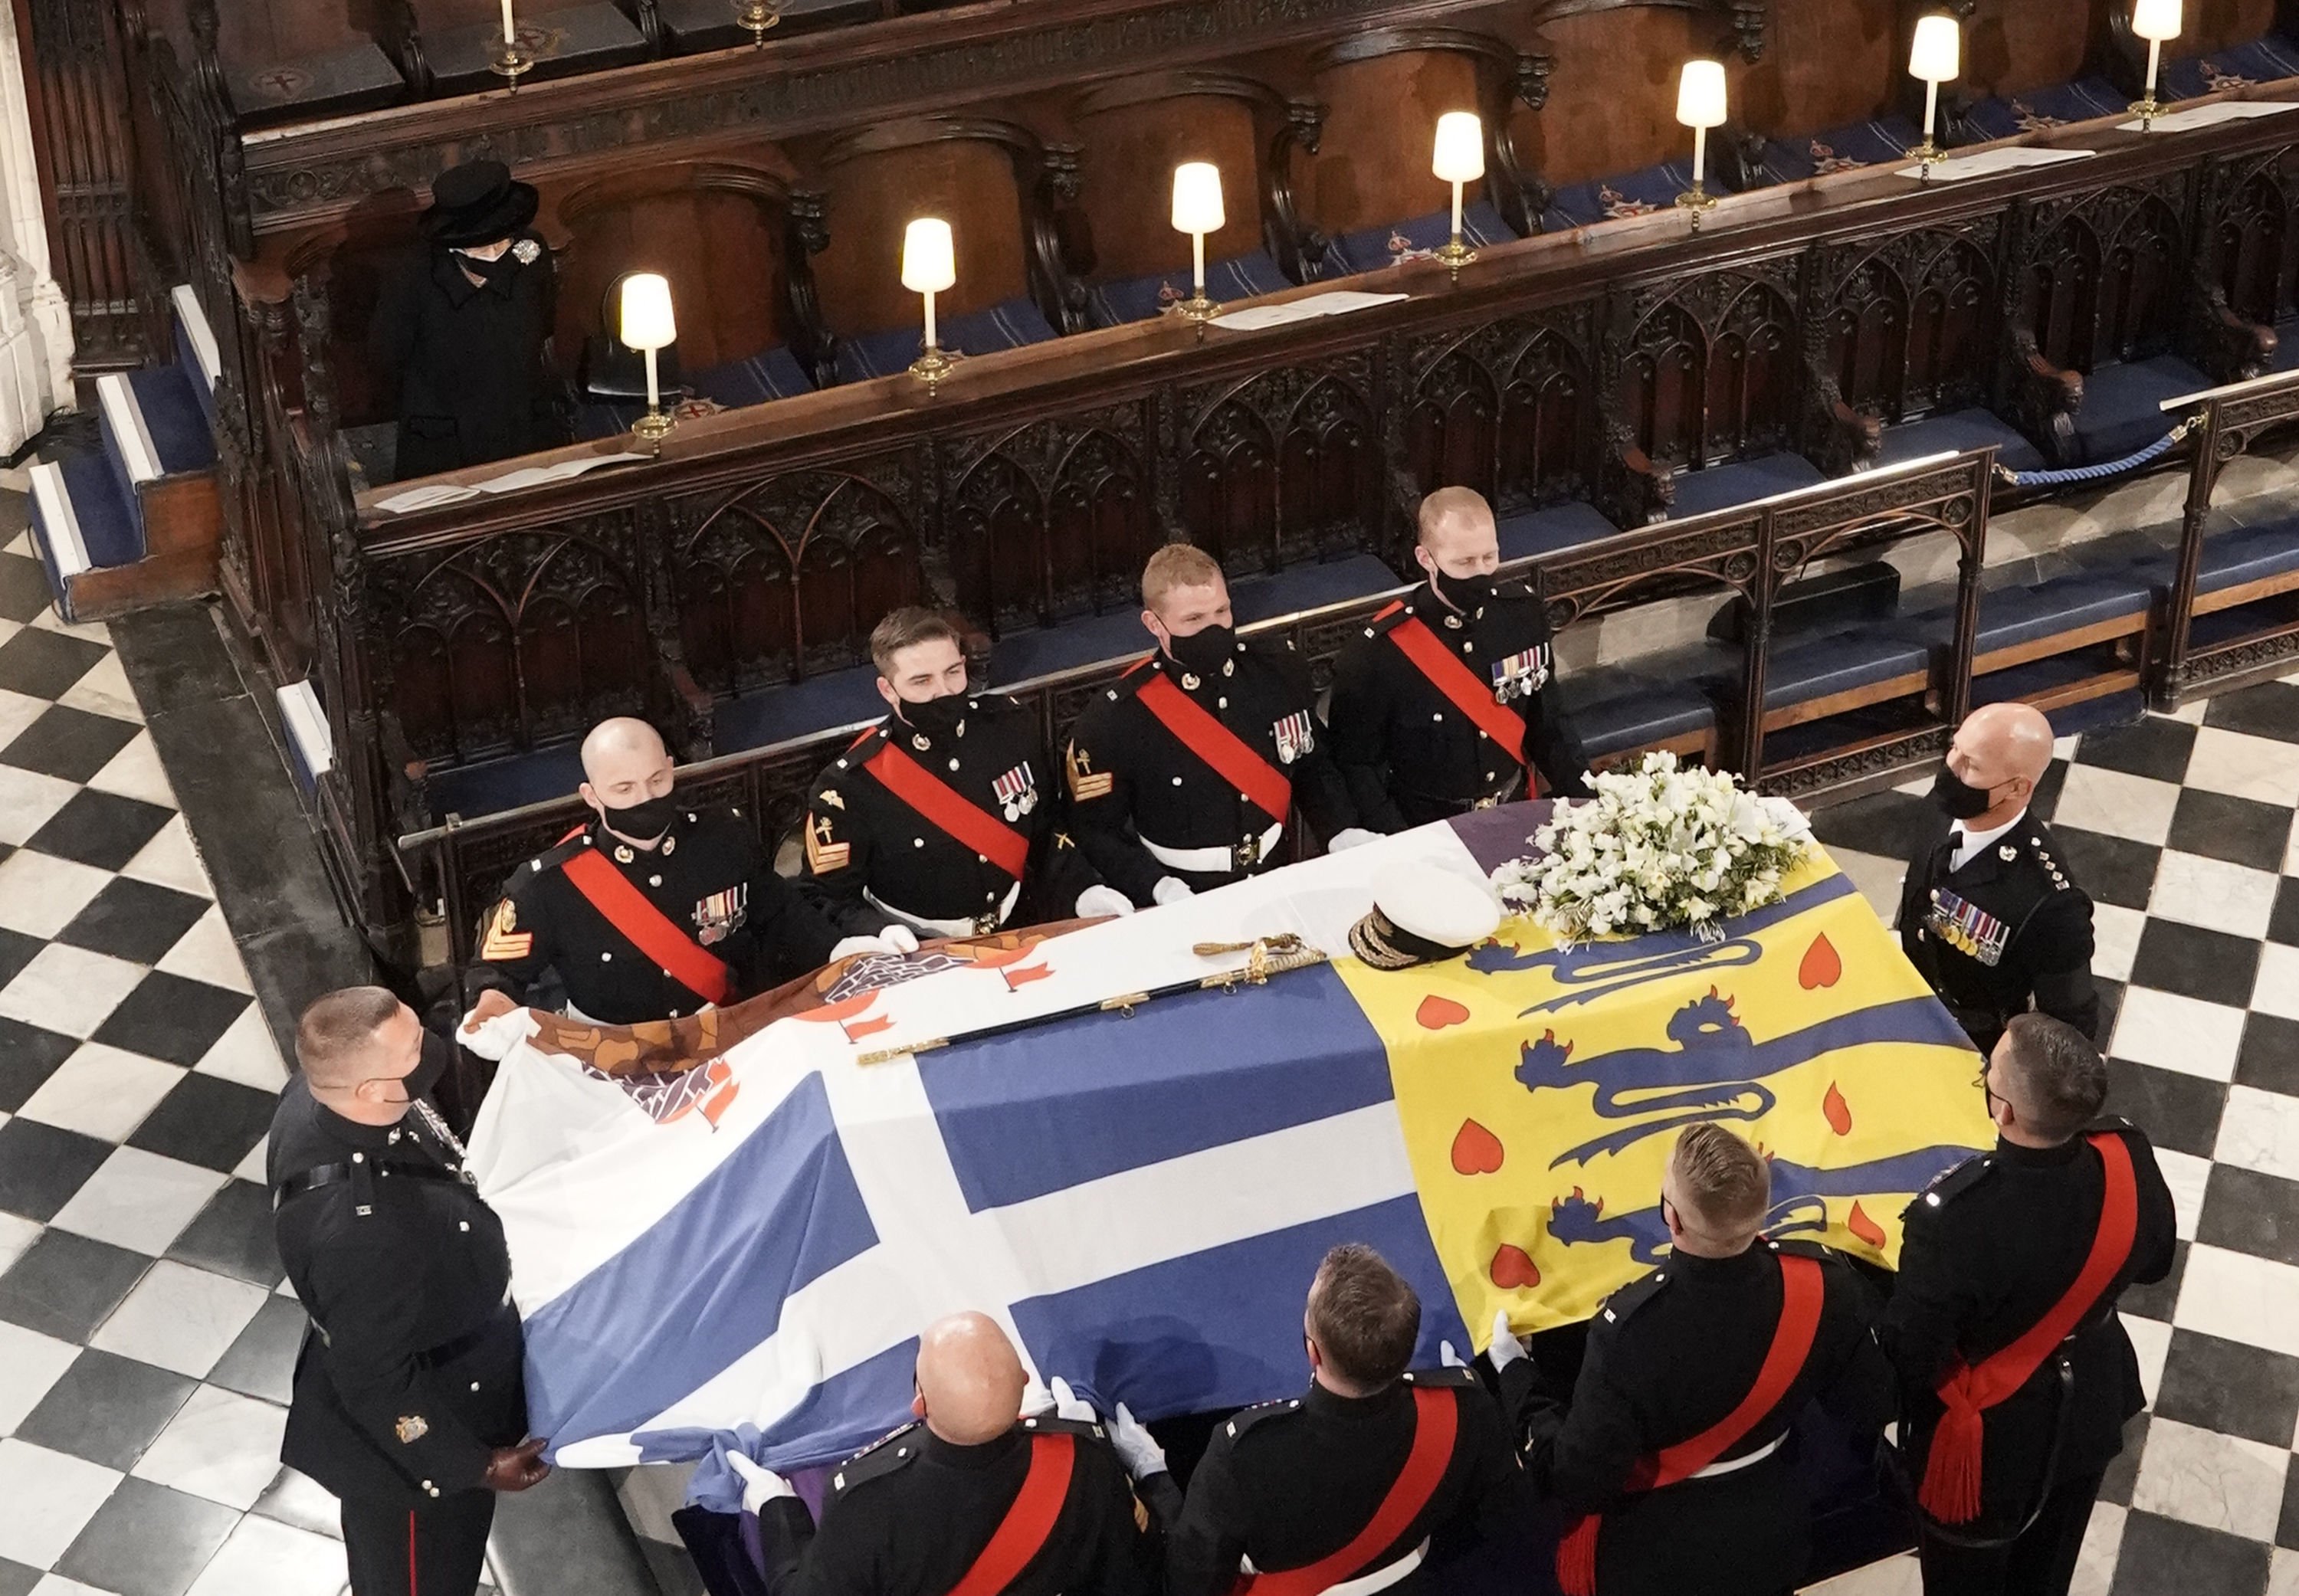 La reina Elizabeth  II observando cómo los portadores del féretro colocan el ataúd del duque de Edimburgo durante su funeral en la capilla de St. George en el castillo de Windsor, el 17 de abril de 2021 en Windsor, Inglaterra. | Foto: Getty Images